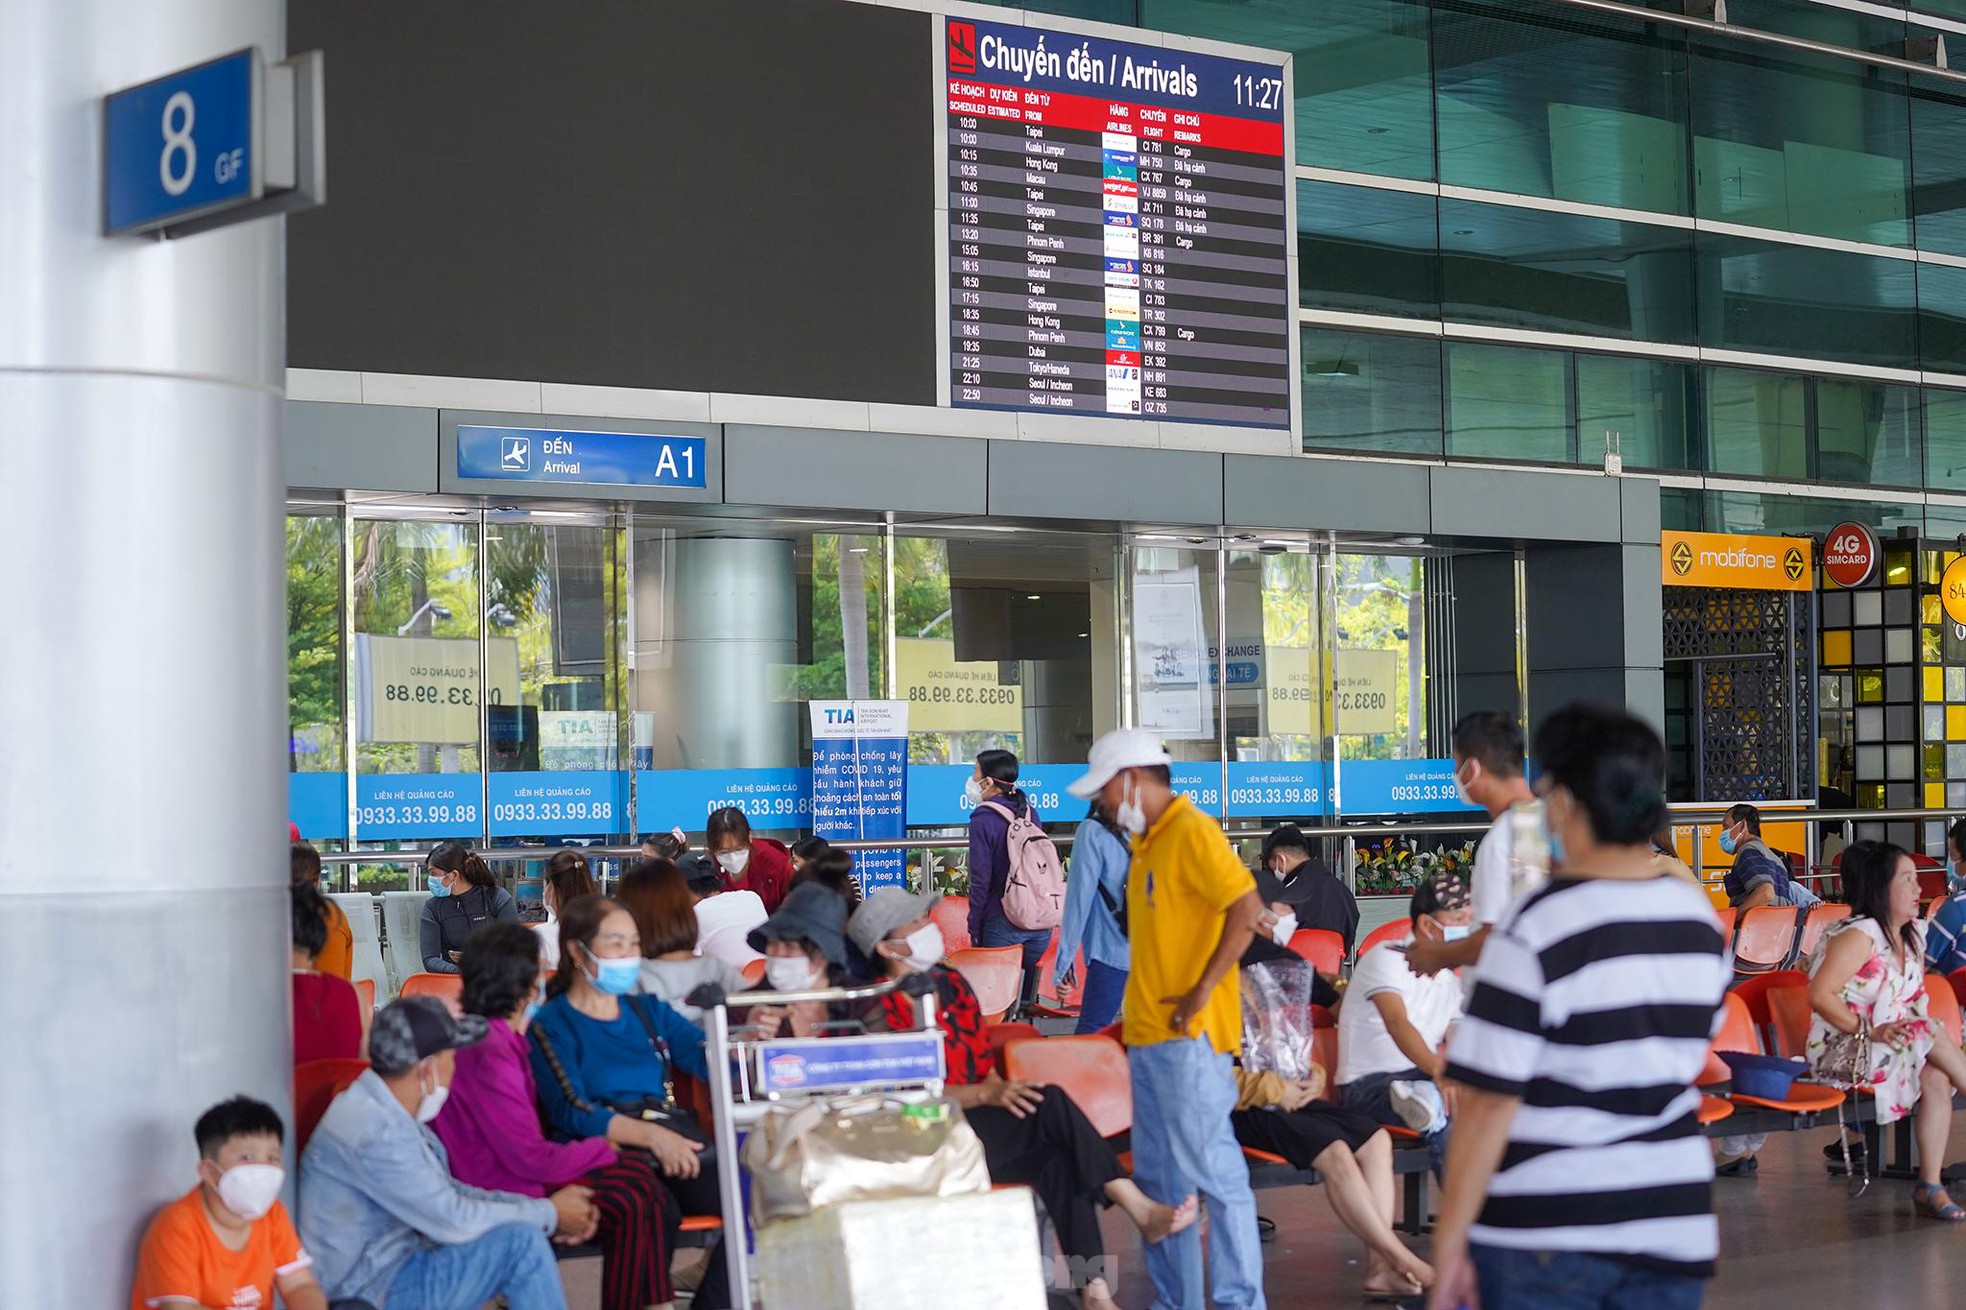 Vỡ òa cảm xúc tại sân bay Tân Sơn Nhất trong ngày đầu mở lại đường bay quốc tế - Ảnh 1.